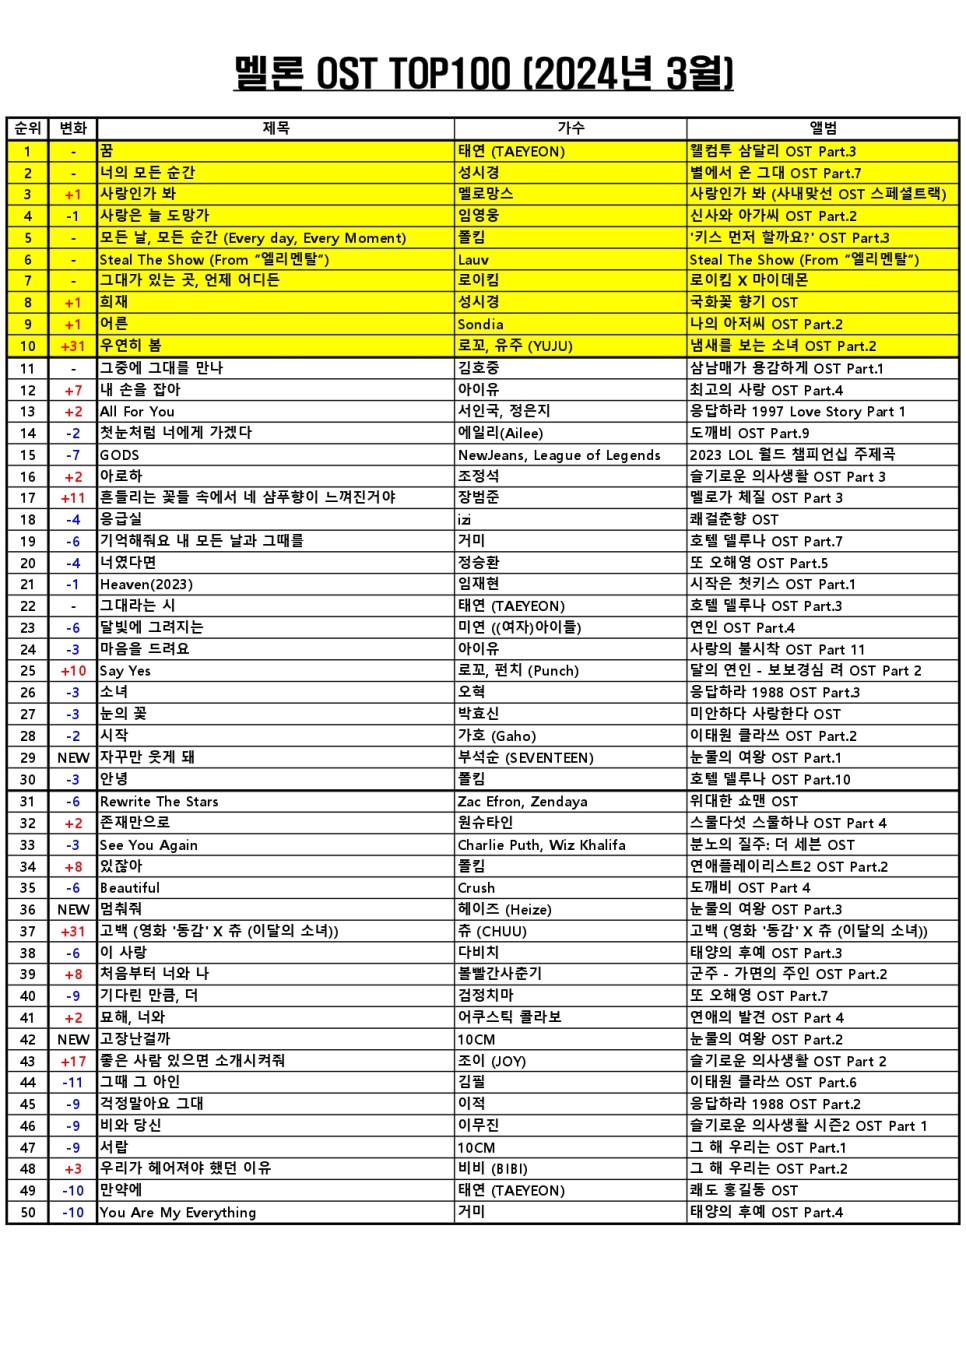 멜론차트 OST TOP100 음원차트순위 (2024년 3월) [영화음악 영화OST추천 영화삽입곡 드라마OST모음] TOP10 곡정보